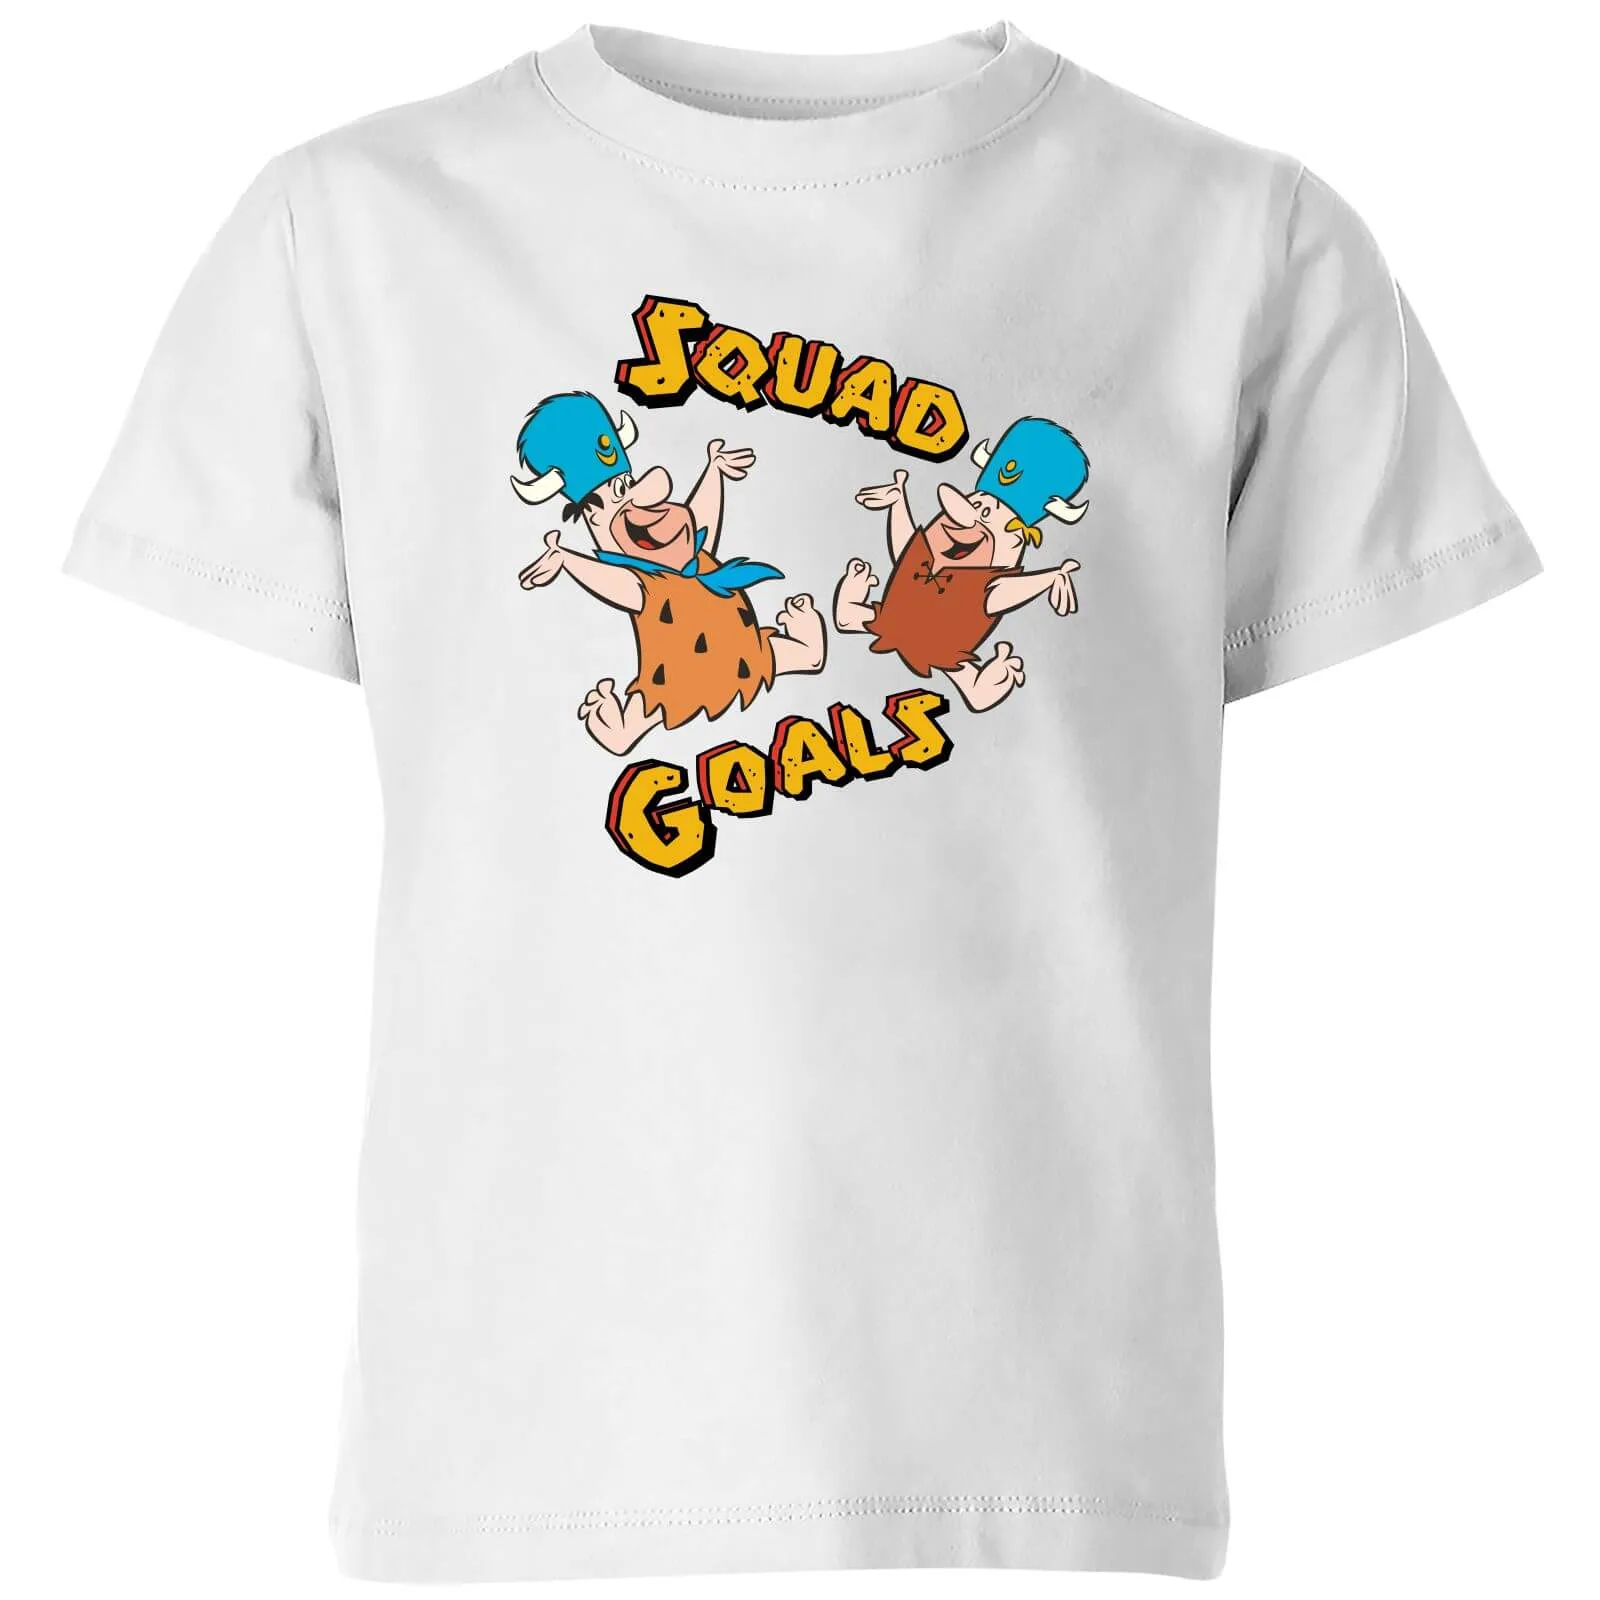 The Flintstones Squad Goals Kids' T-Shirt - White - 9-10 Anni - Bianco